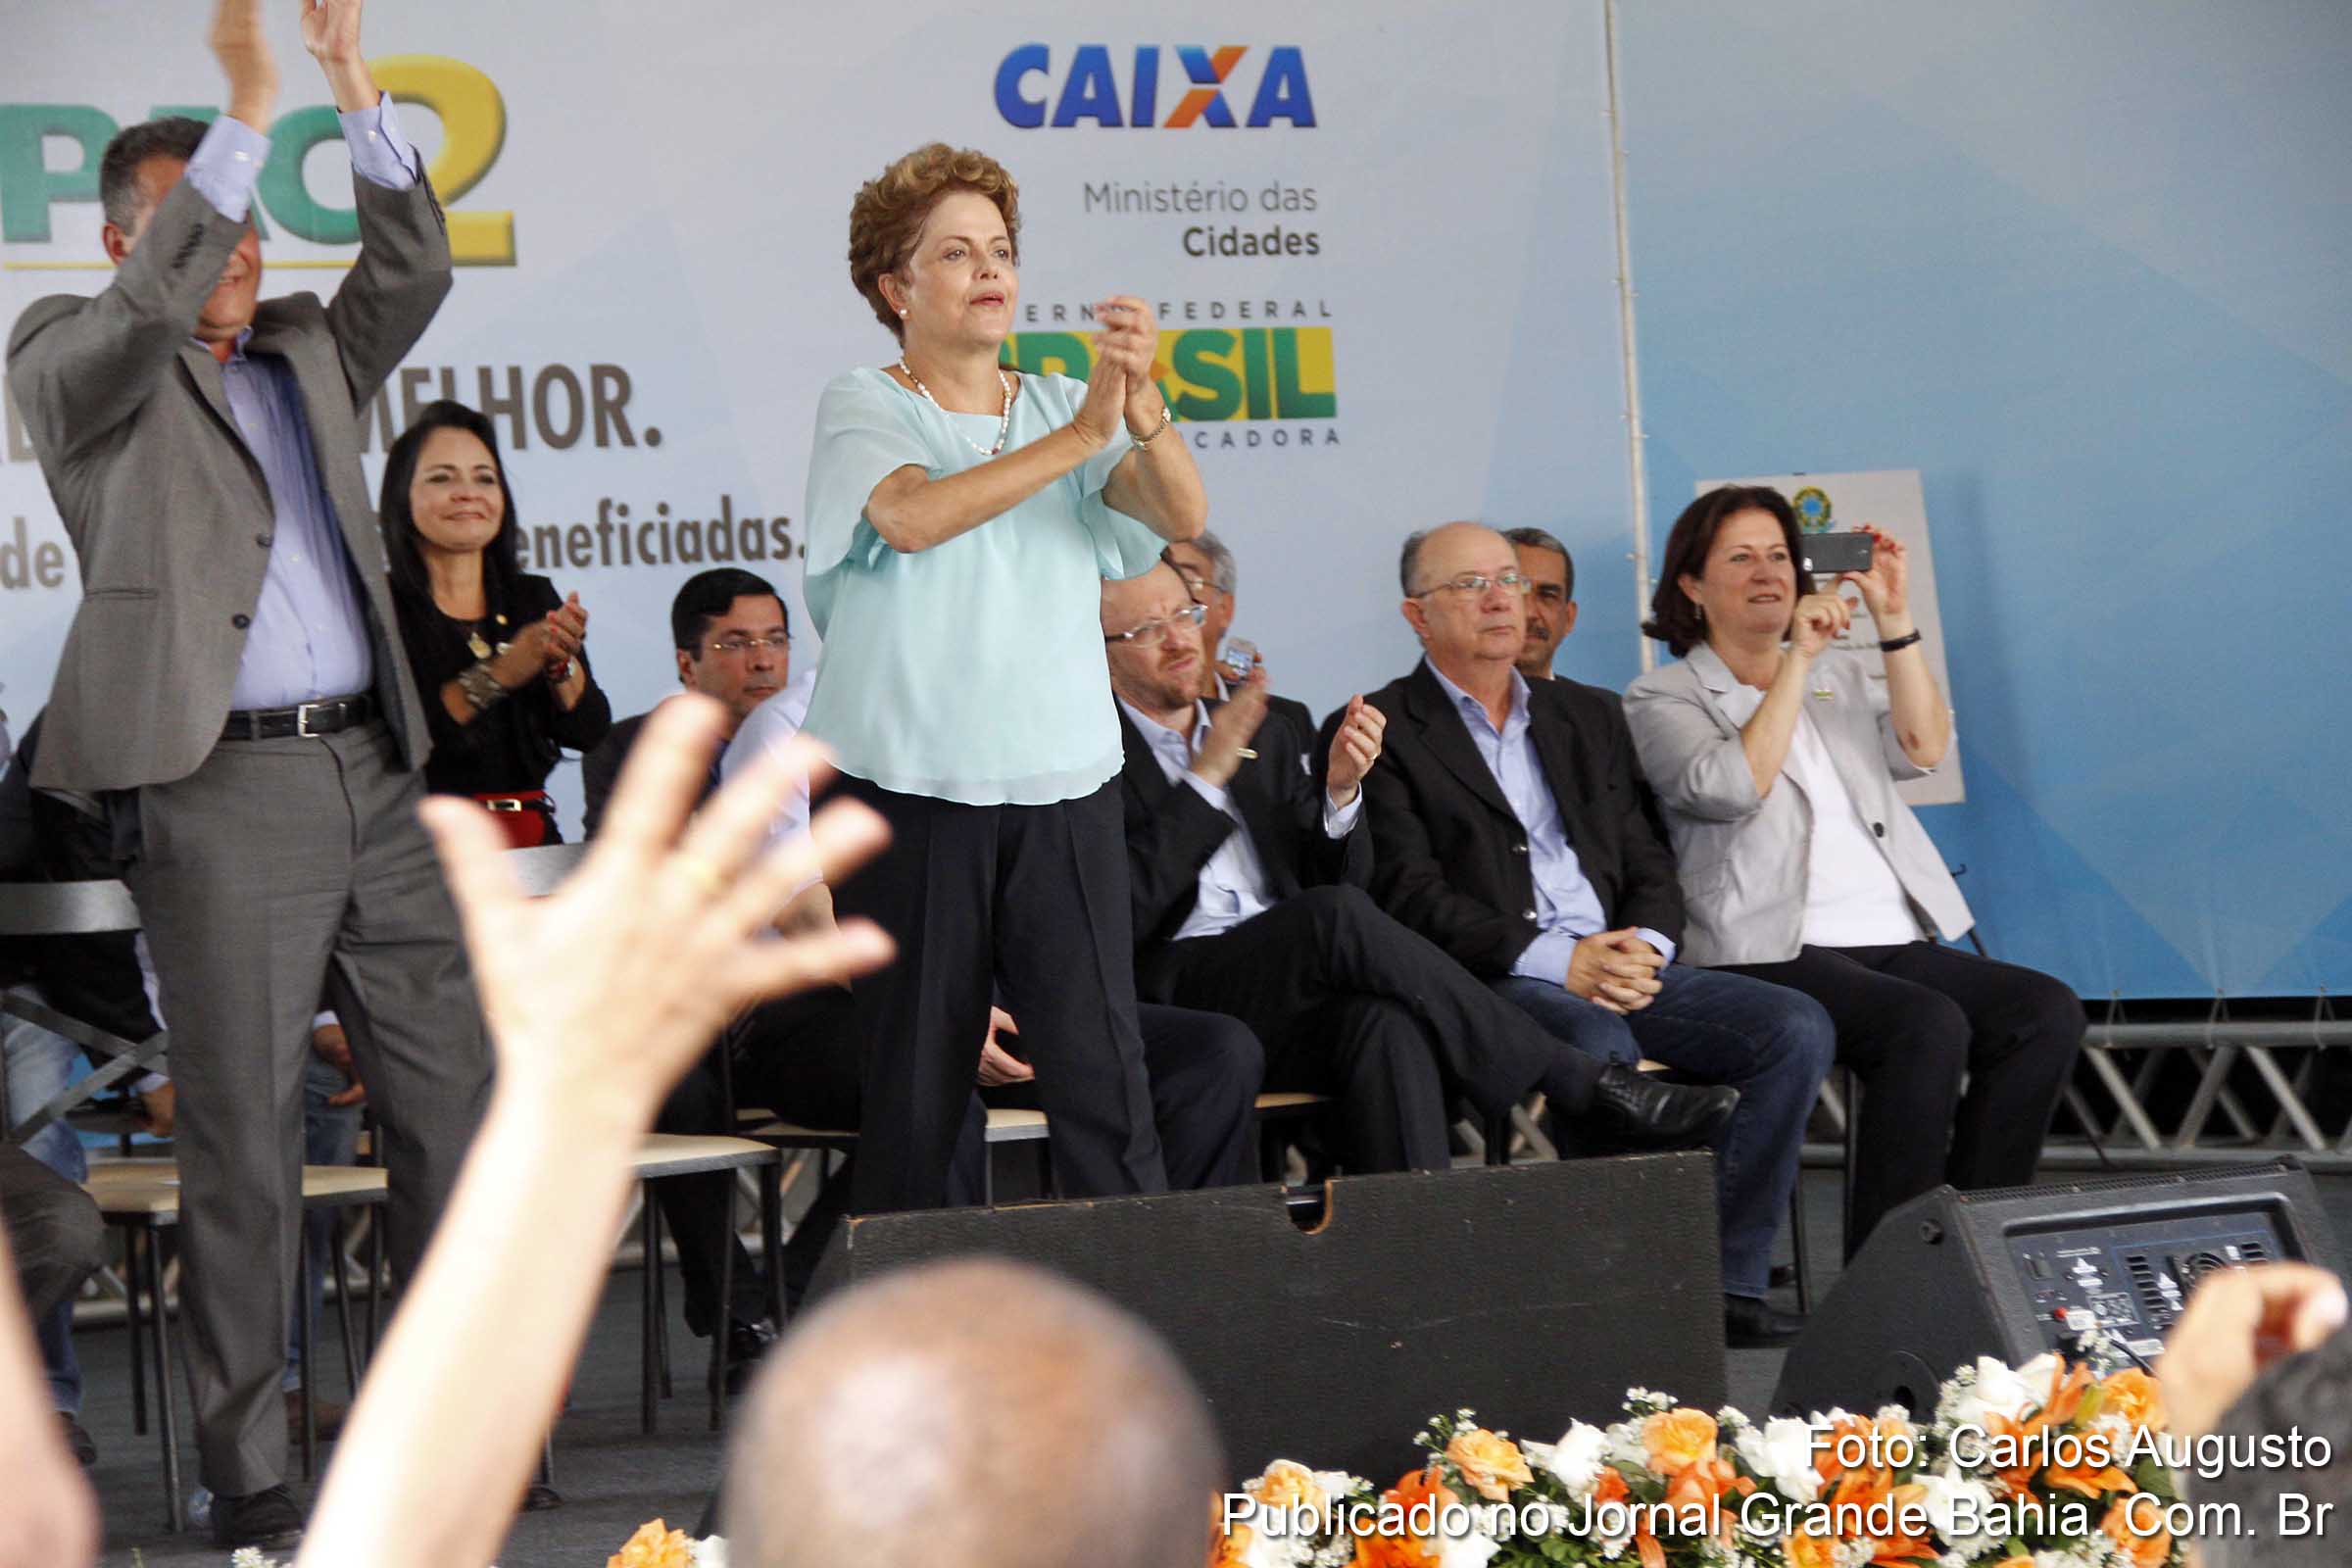 Ao visitar Feira de Santana, presidenta Dilma Rousseff busca aproximar-se das massas e mudar a pauta sobre corrupção e crise econômica, abordados pela imprensa. Realidade socioeconômico do empreendimento inaugurado traduz a práxis de um governo clivado pela corrupção e ineficiência.